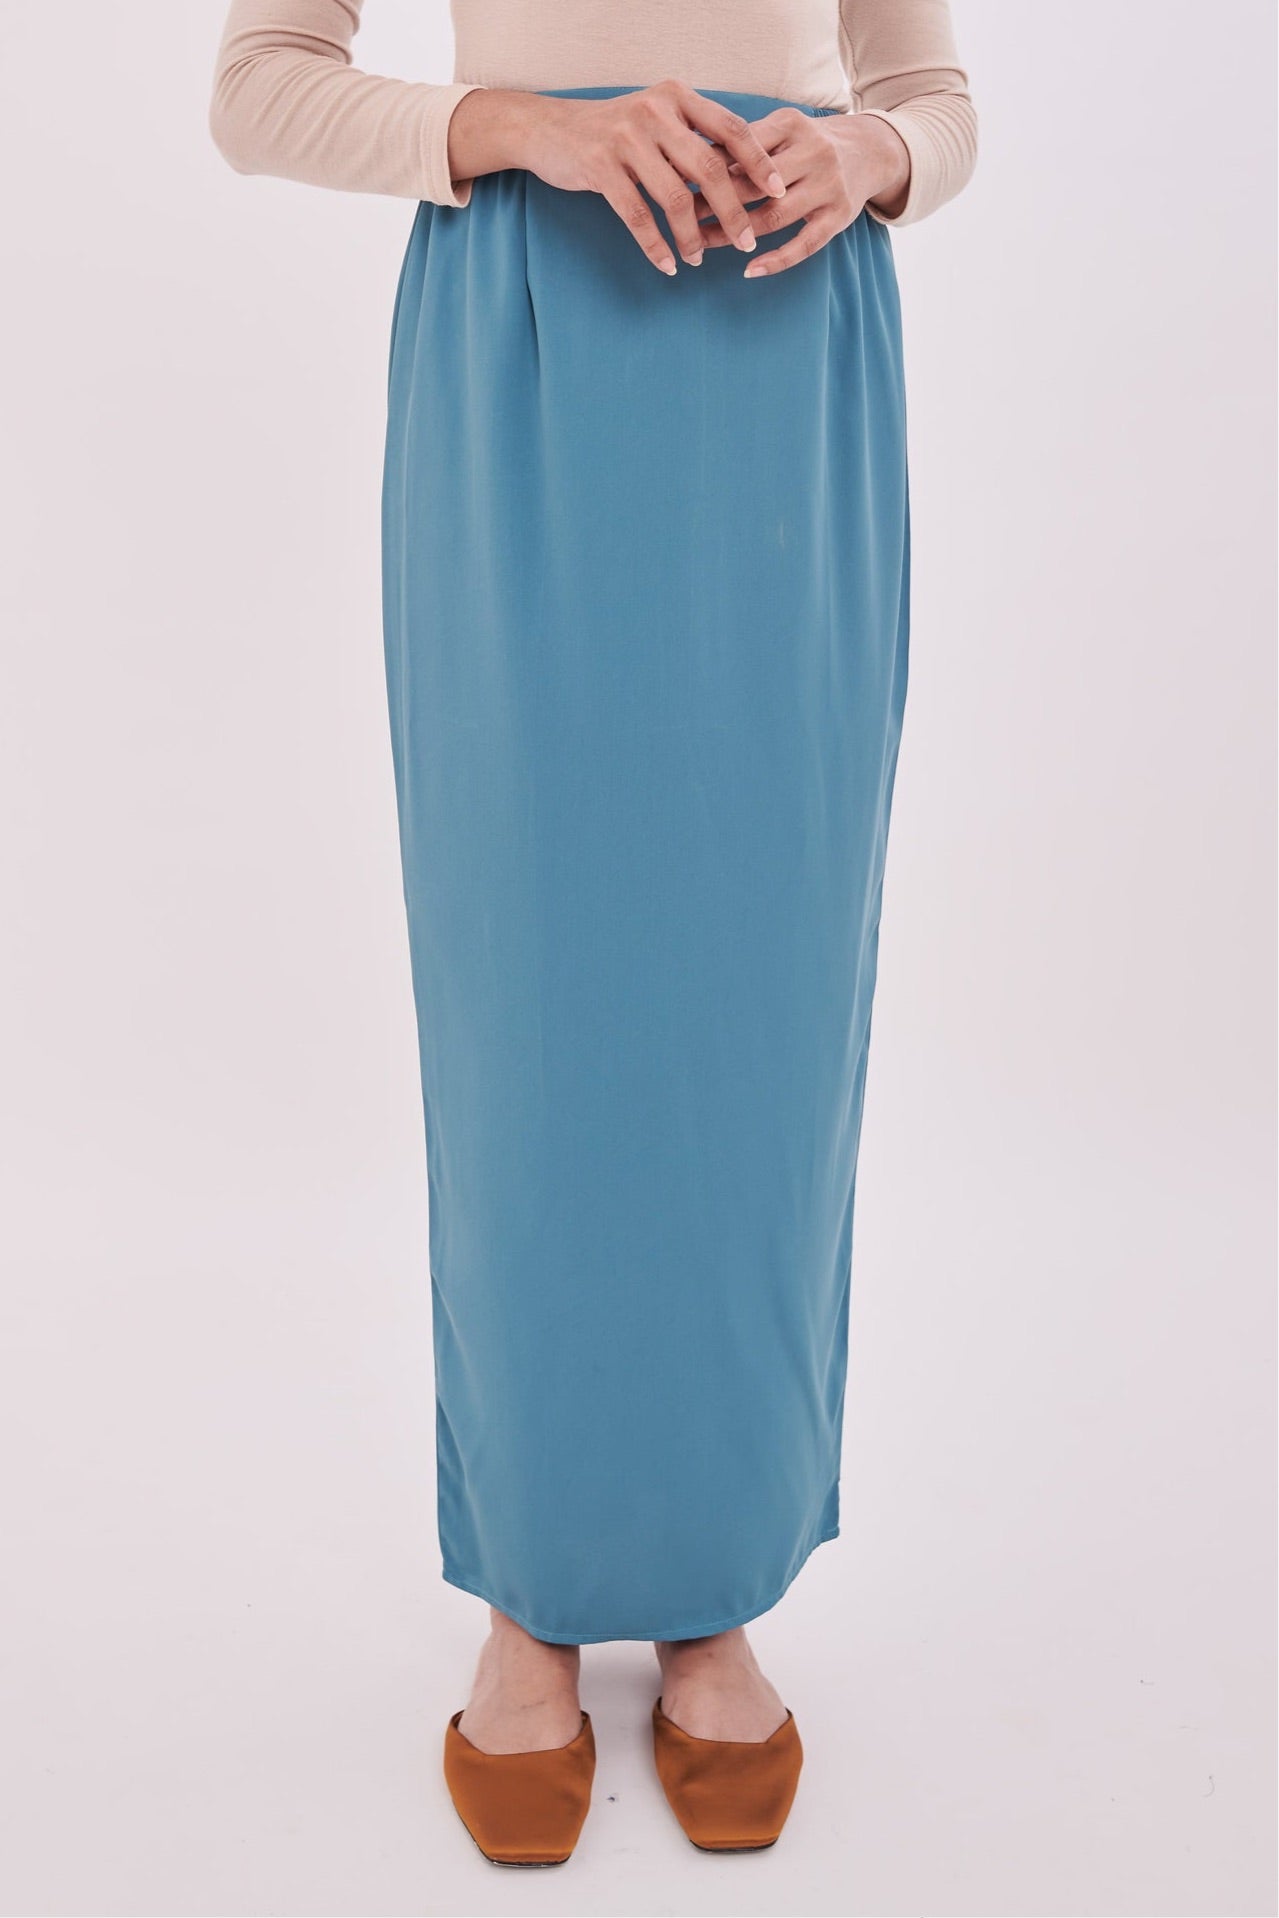 Edza Skirt in Turquoise